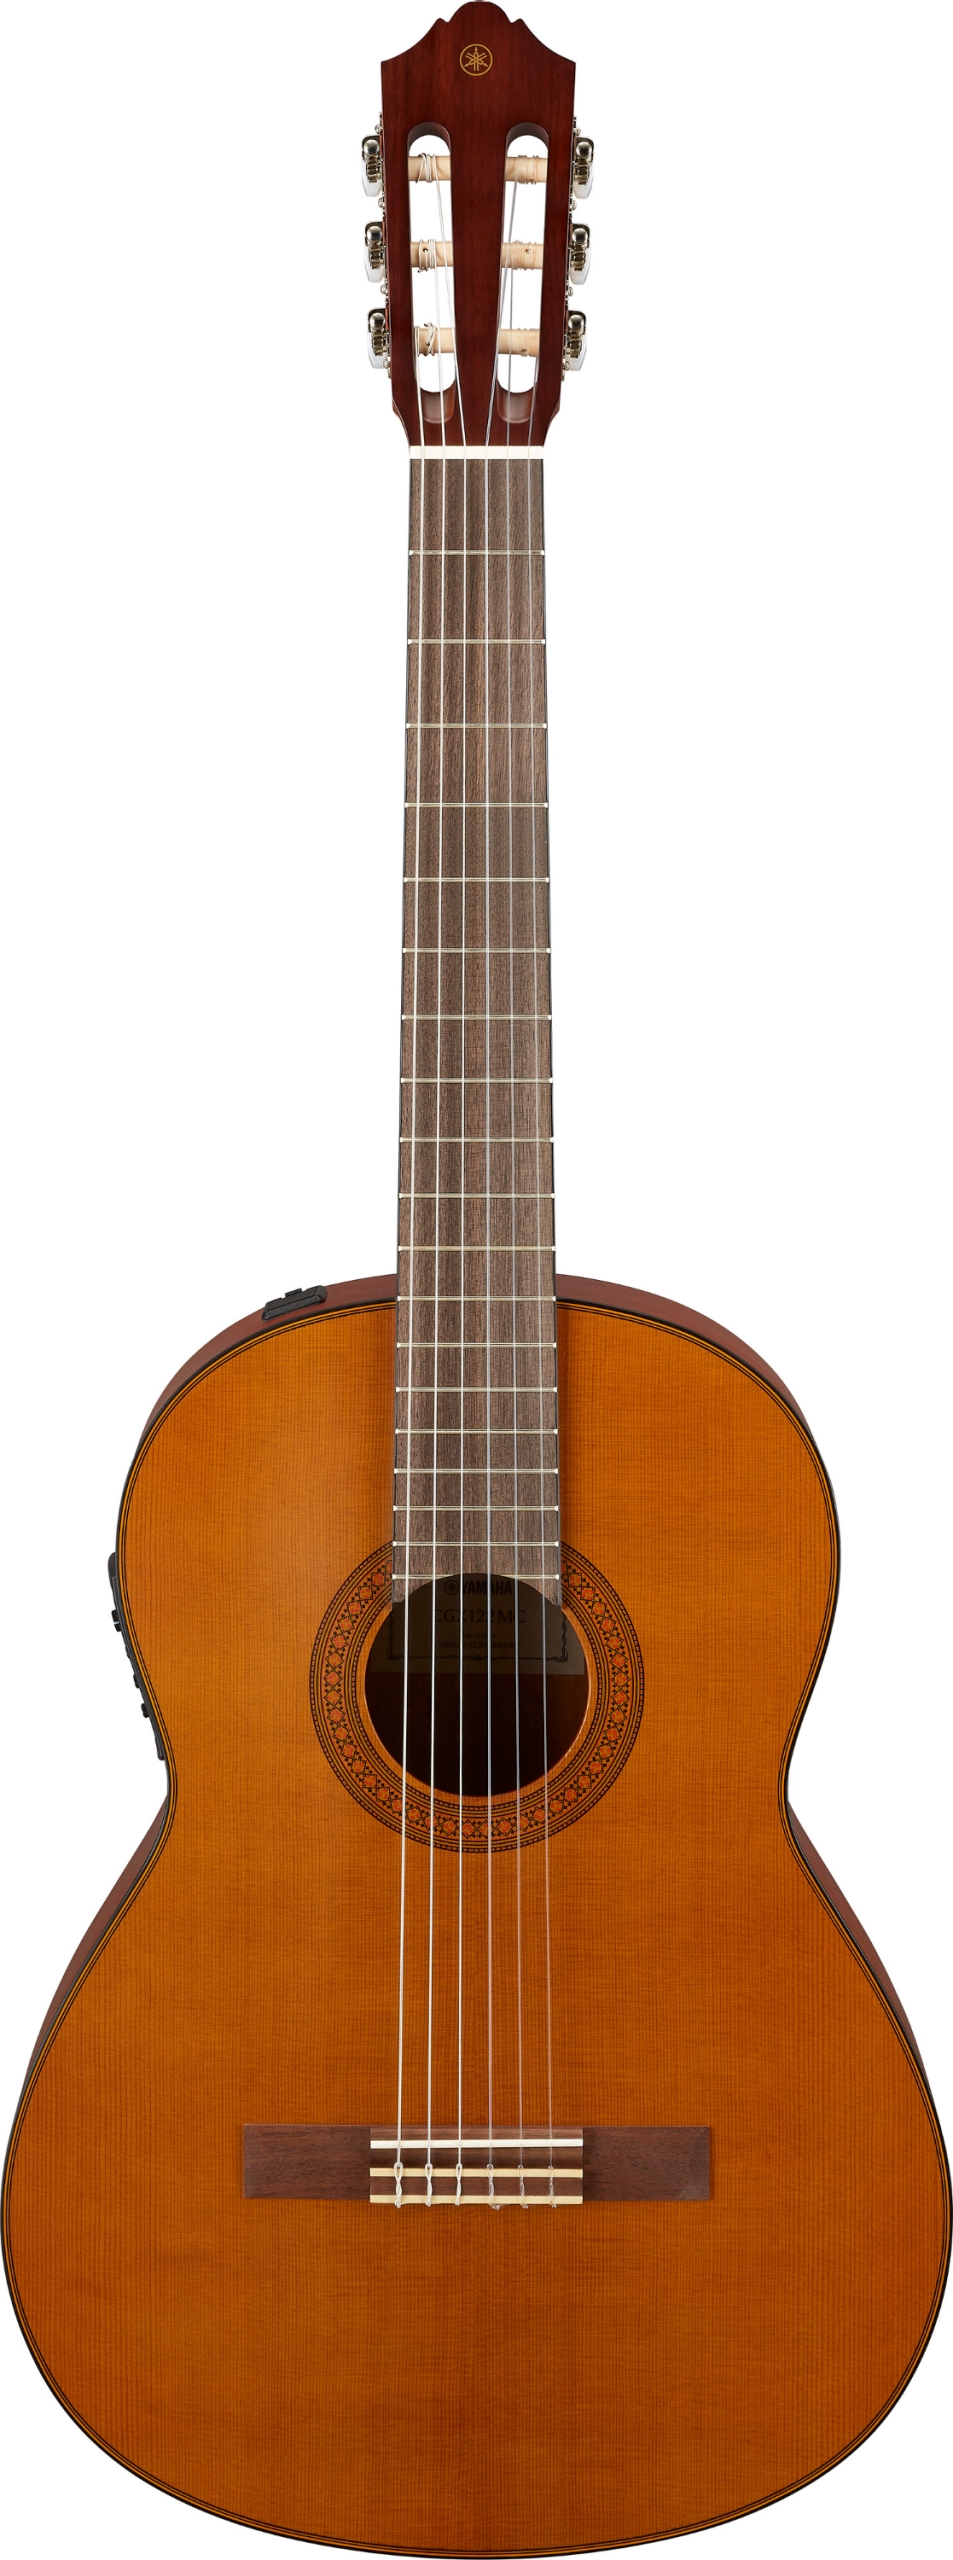 Billede af Yamaha CGX122MC Klassisk Spansk Guitar (Cedar Natural)